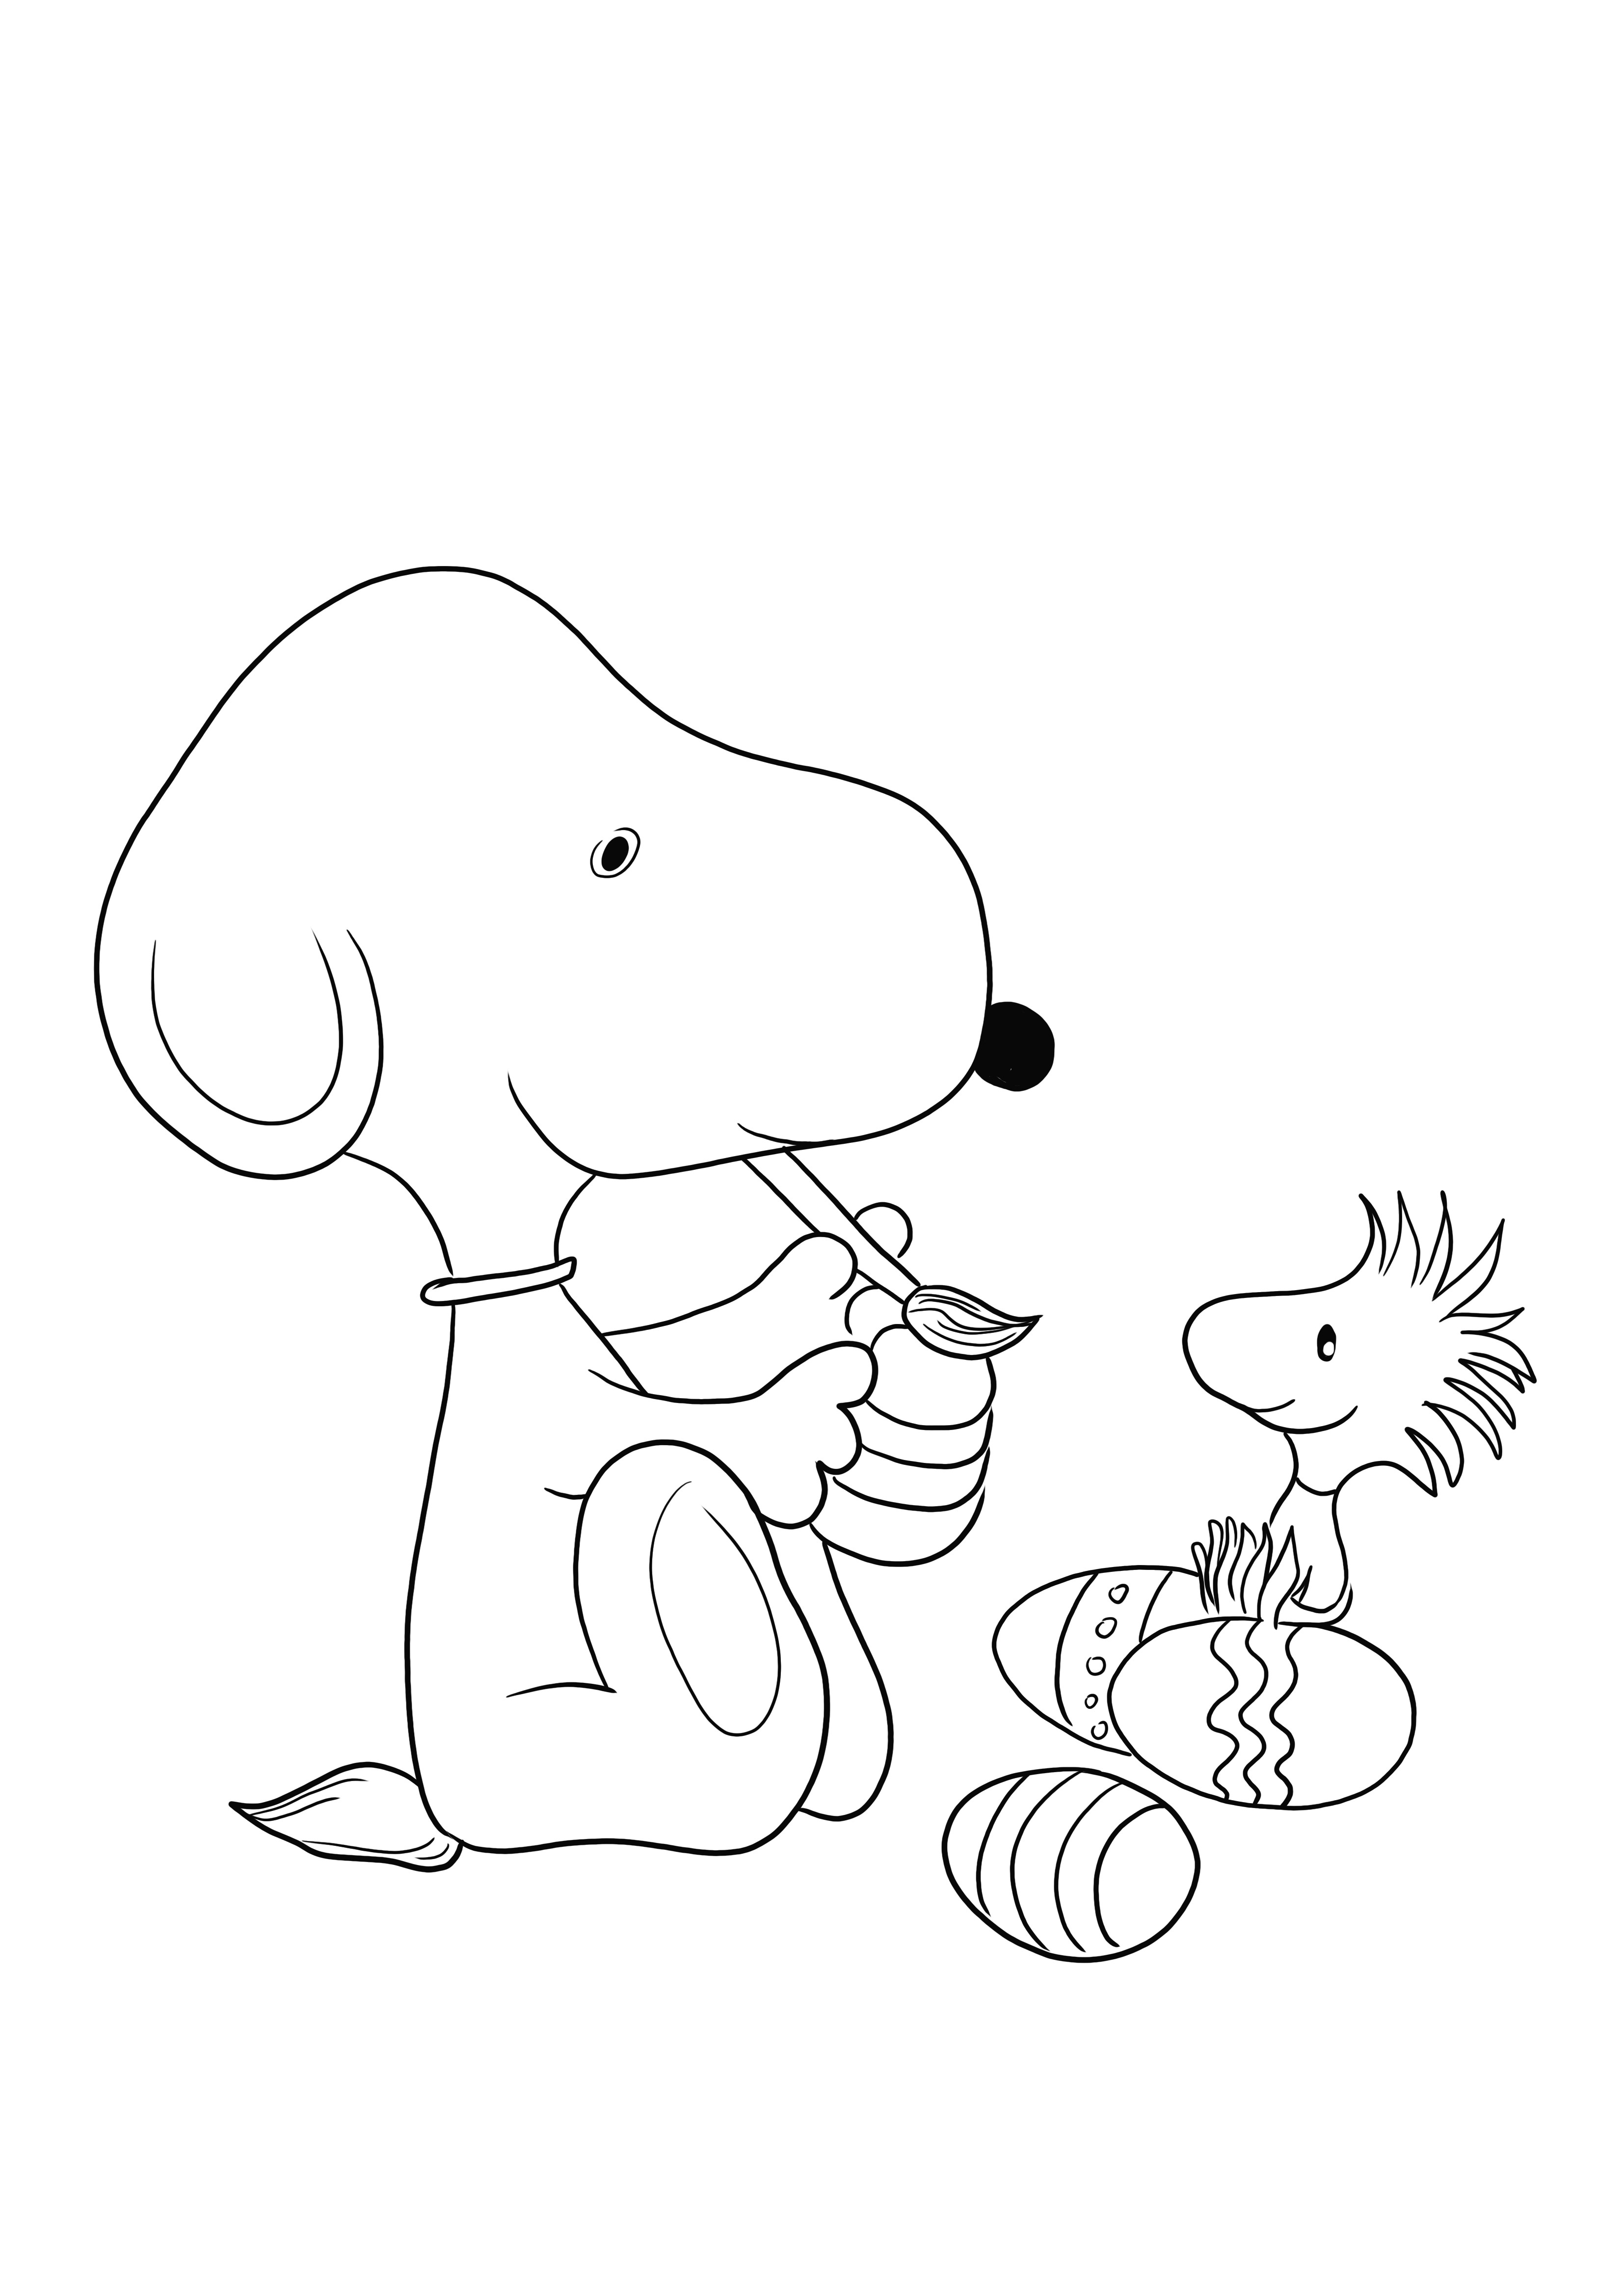 Snoopy du dessin animé Peanuts peignant un œuf de Pâques gratuit à télécharger et à colorier